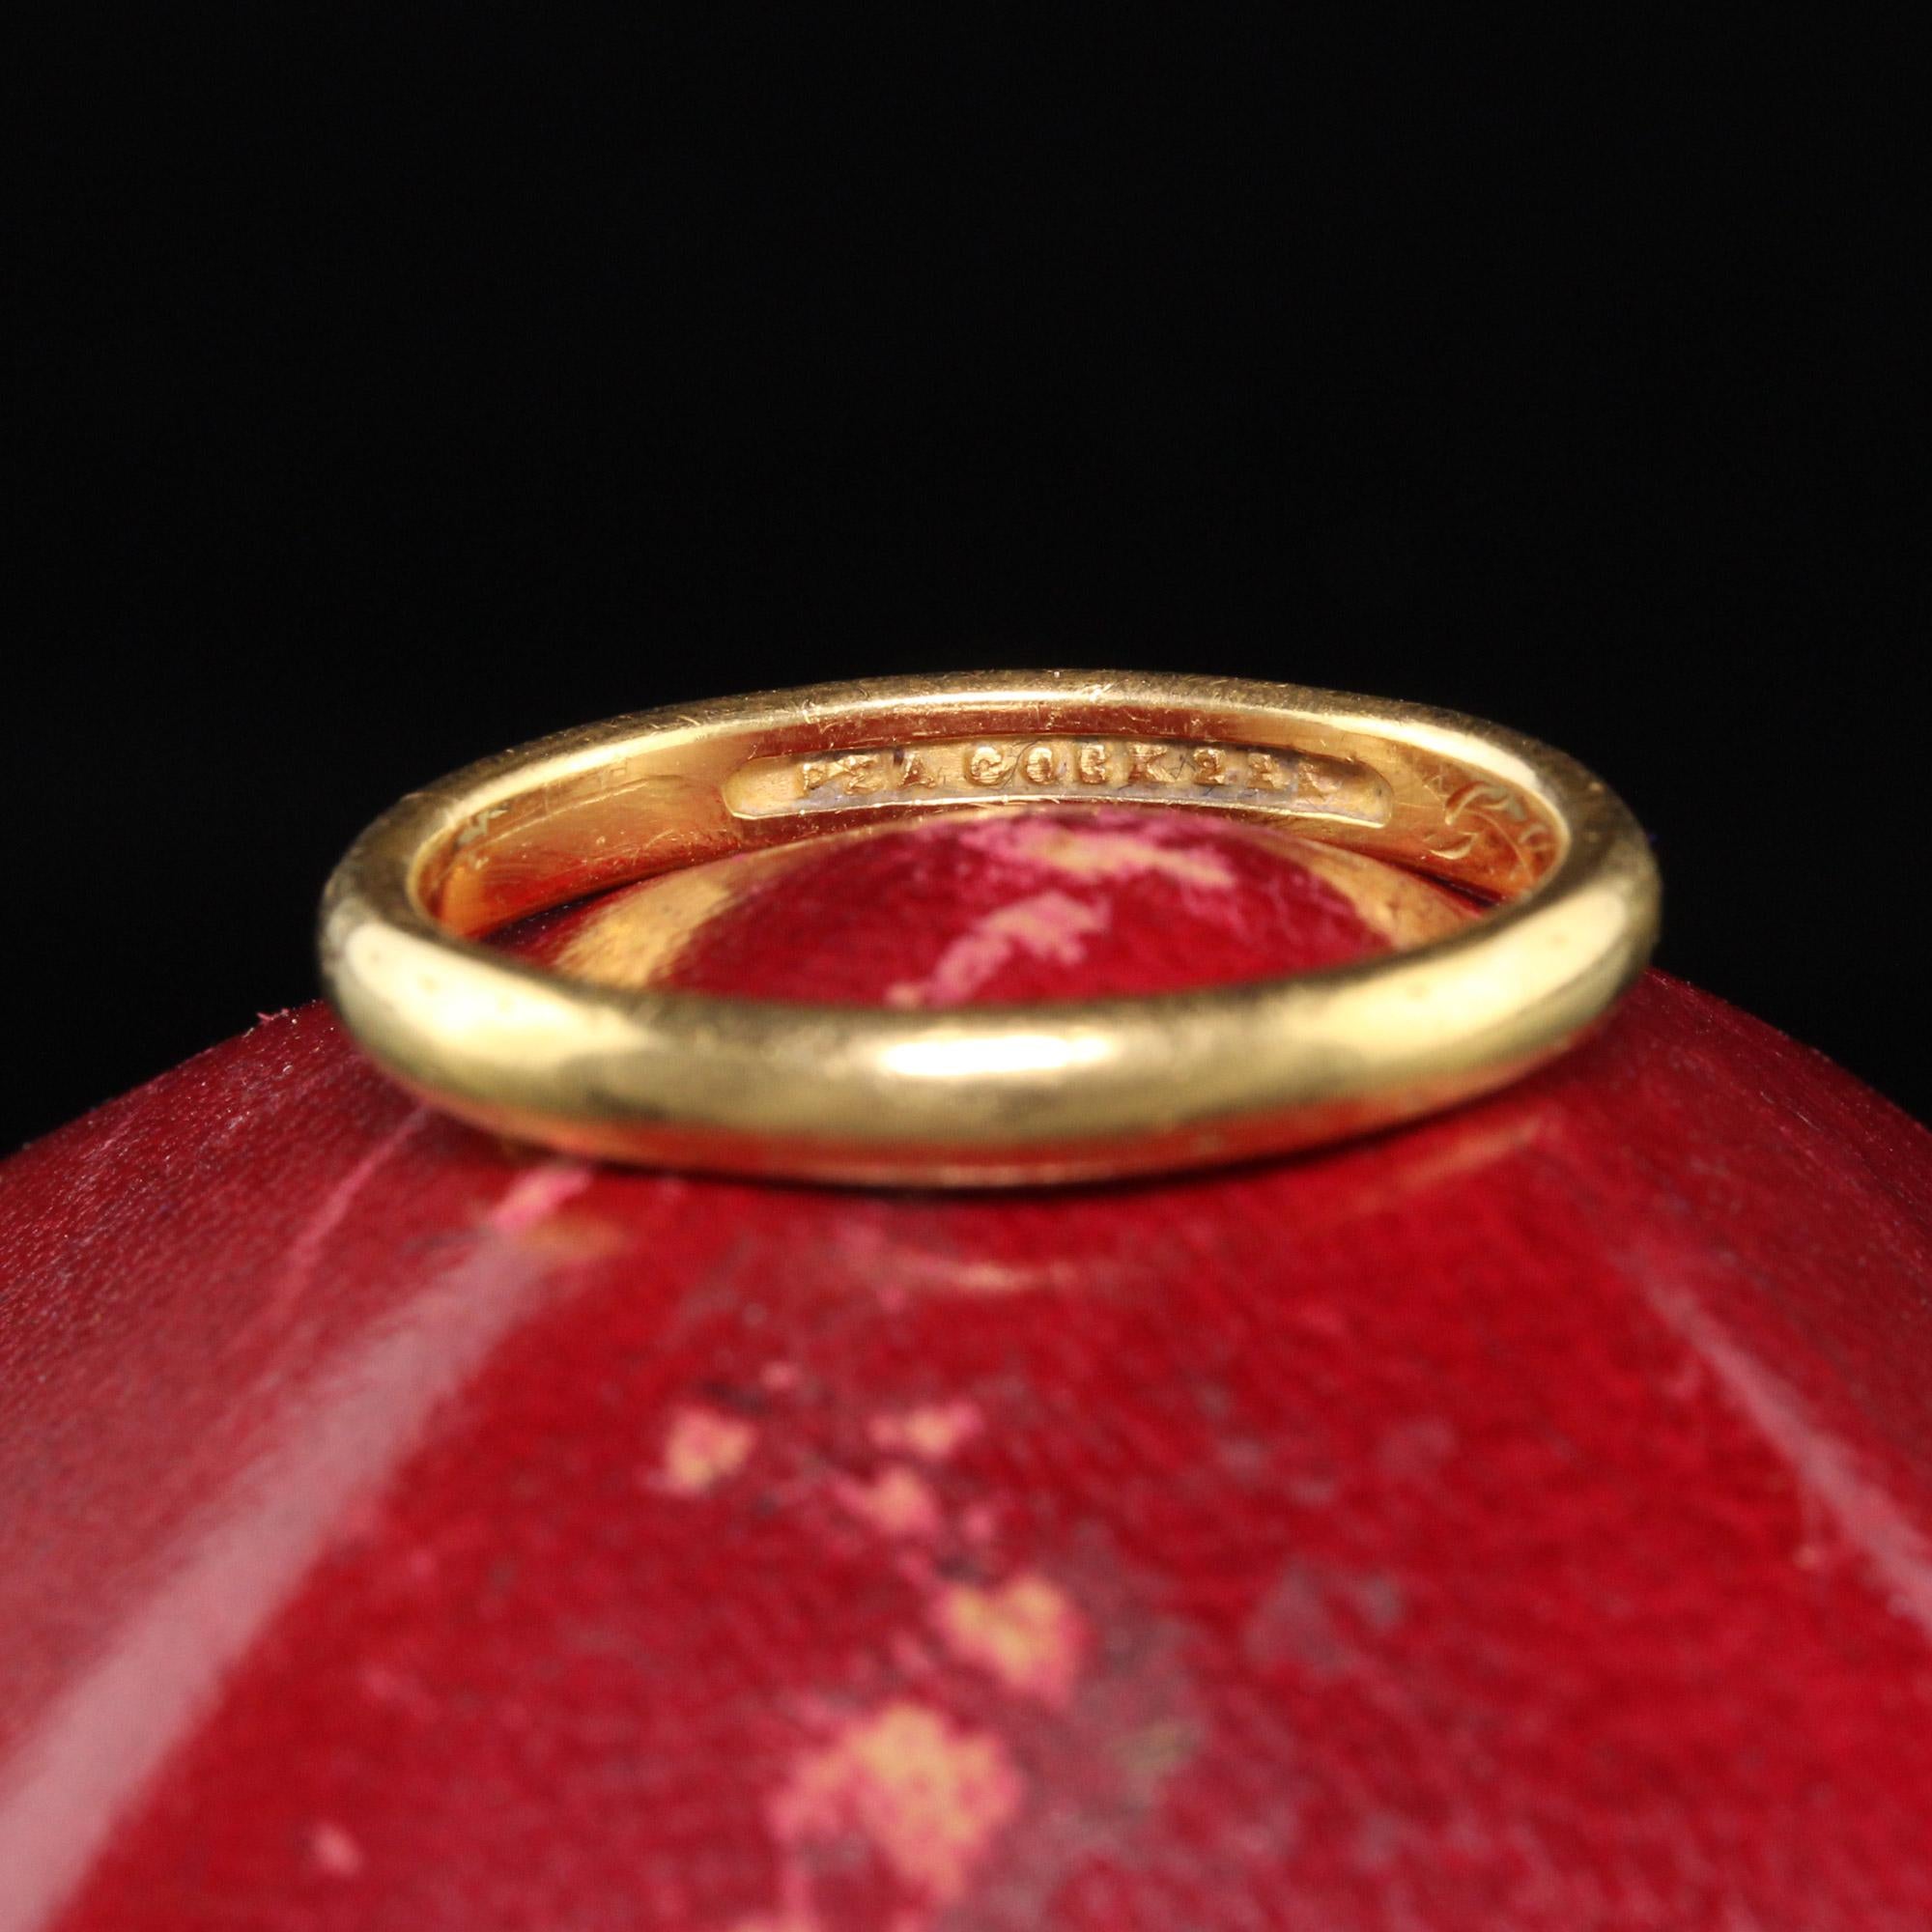 22k yellow gold ring